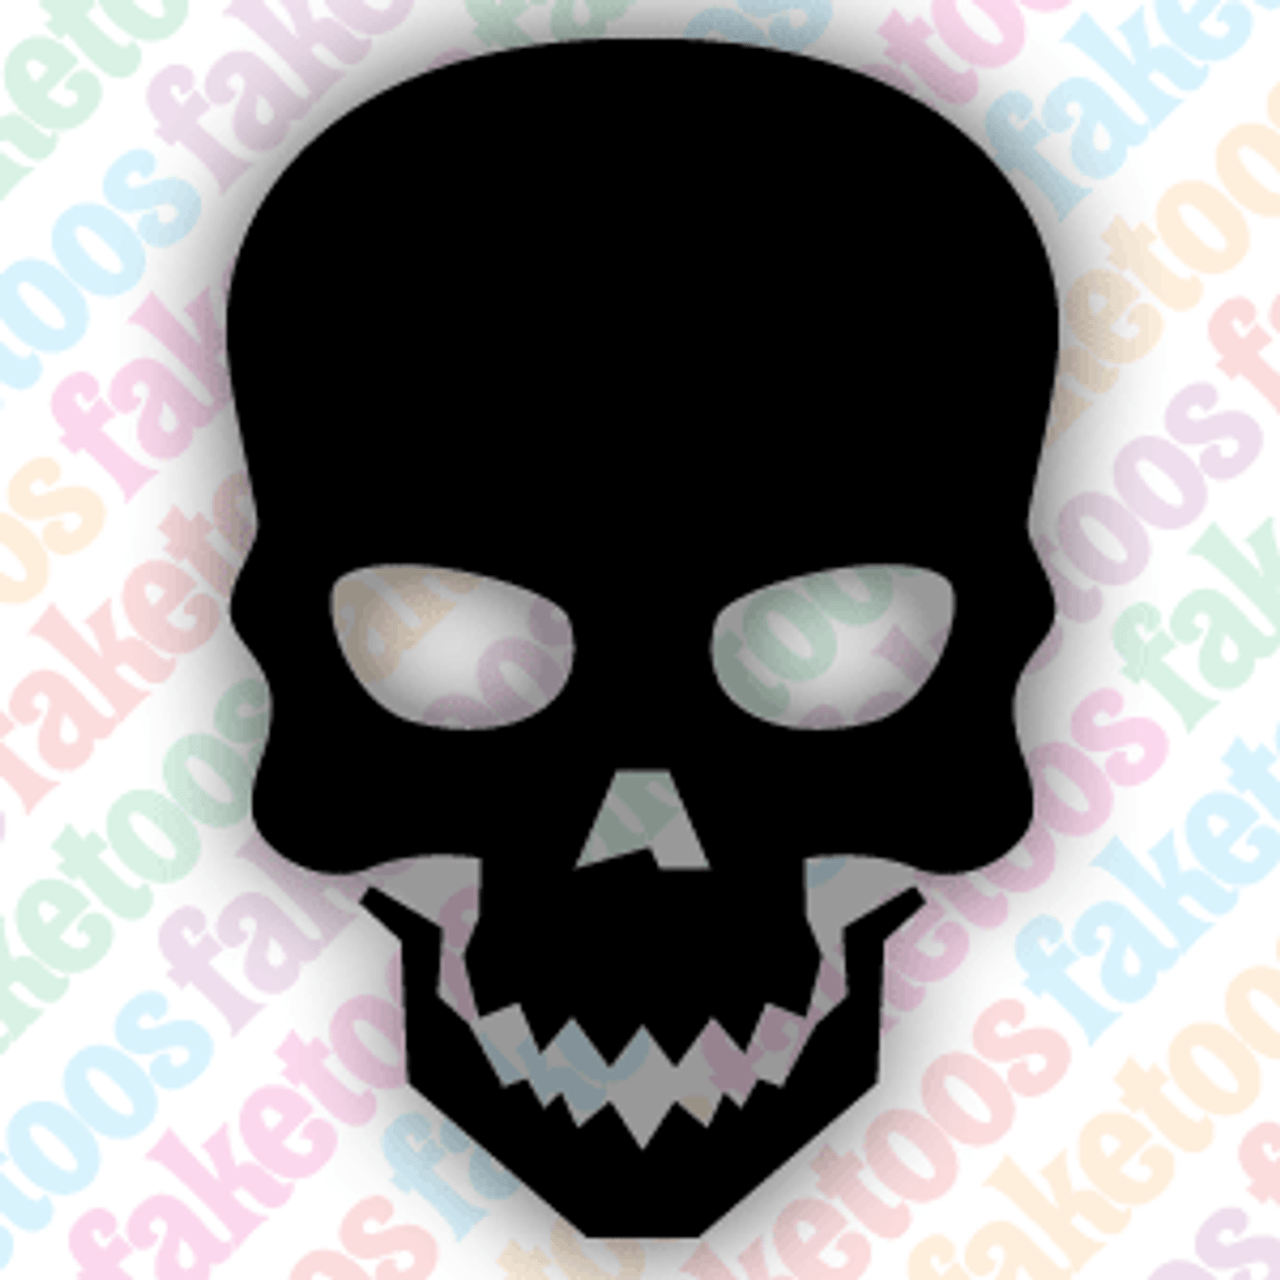 180 Skull Tattoo Stencil Illustrations RoyaltyFree Vector Graphics   Clip Art  iStock